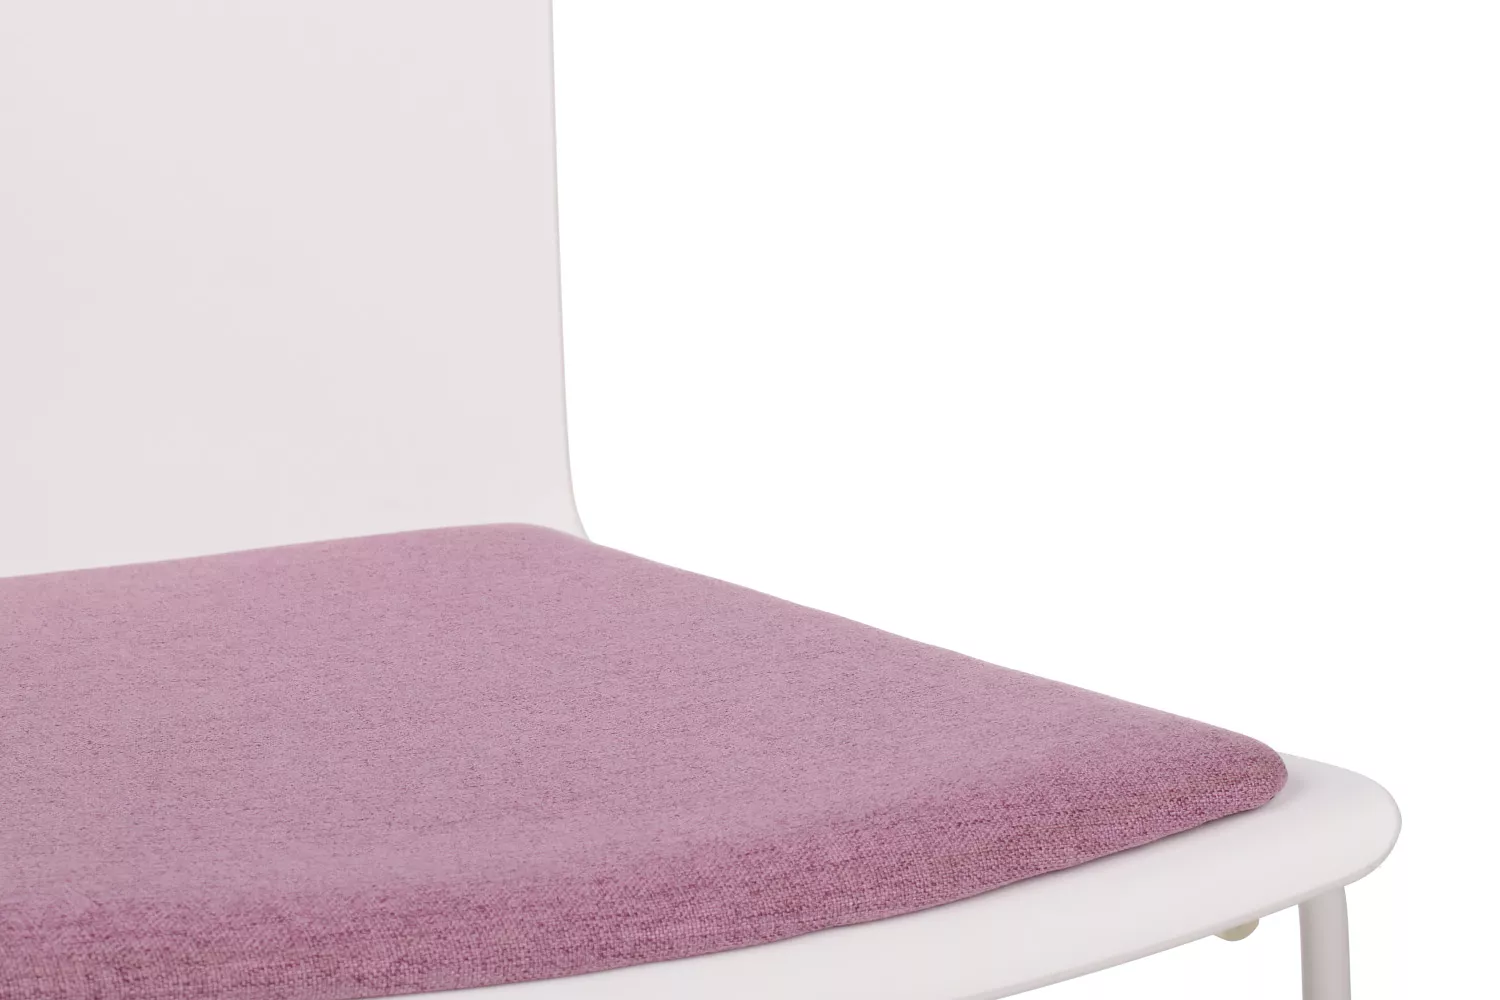 Стул для посетителей RIVA DESIGN Simple (X-19) белый каркас / розовый